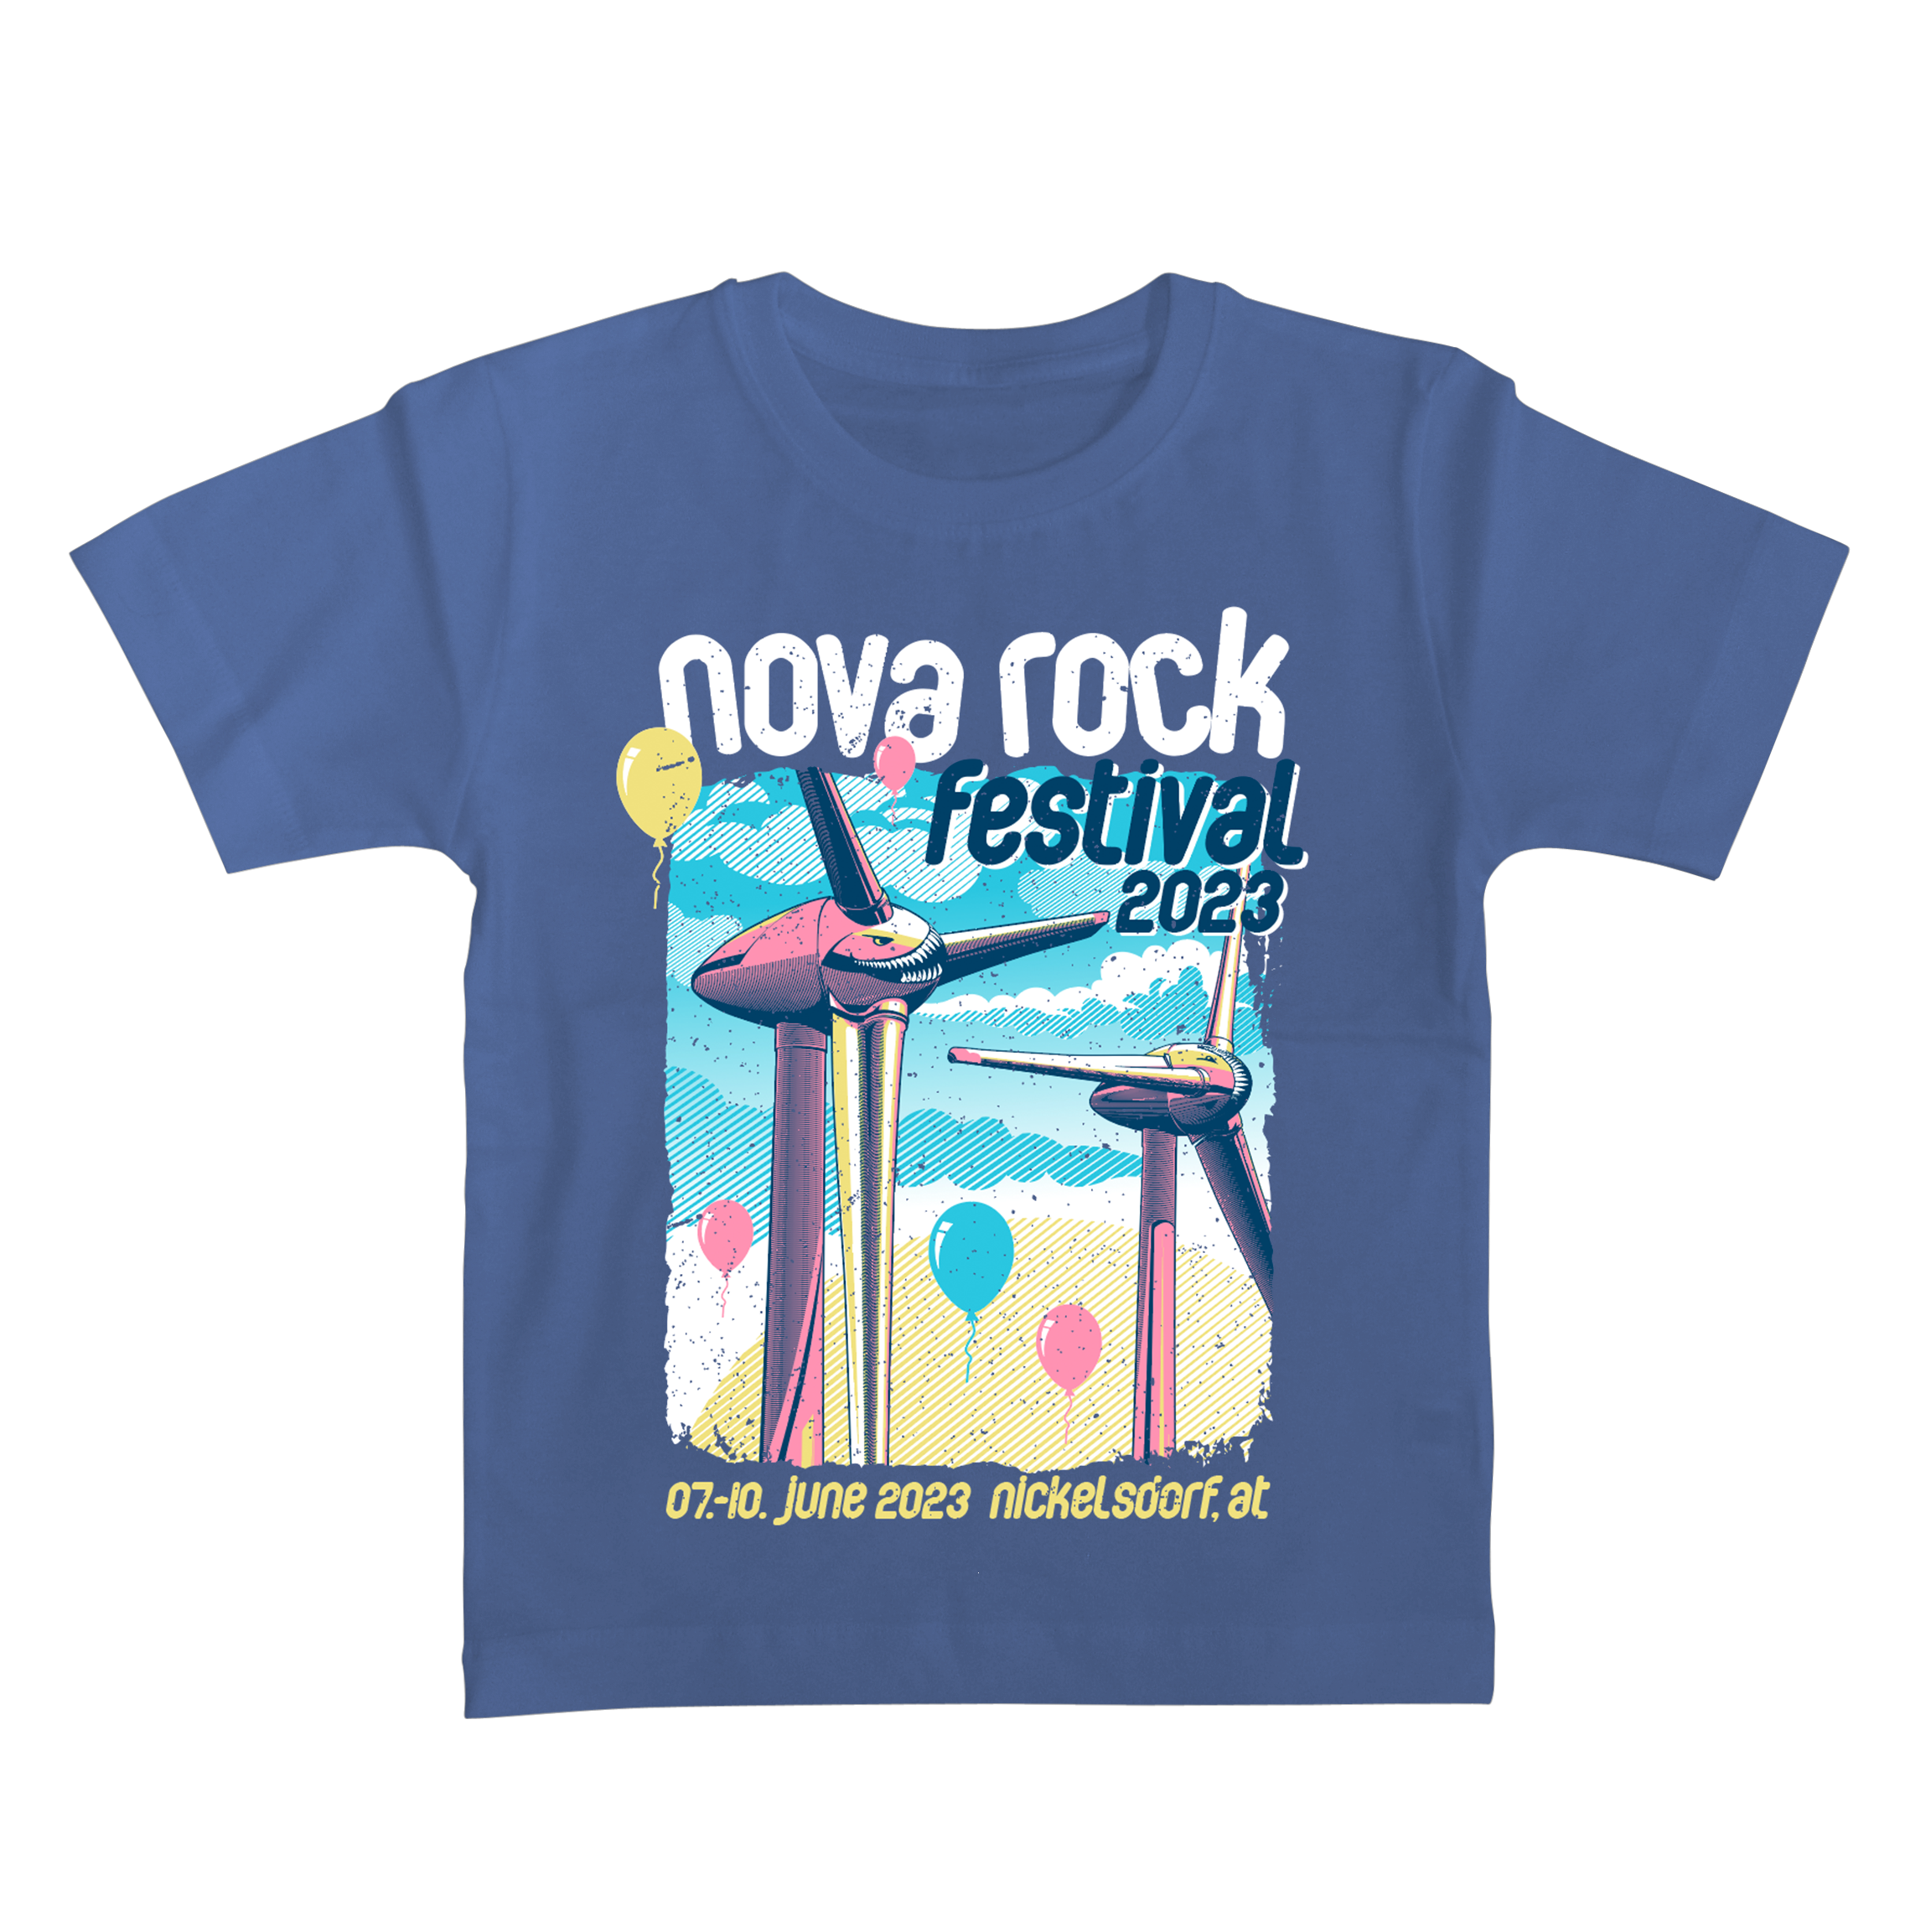 https://images.bravado.de/prod/product-assets/product-asset-data/nova-rock-festival/nova-rock-2023/products/502913/web/382189/image-thumb__382189__3000x3000_original/Nova-Rock-Festival-Wind-of-Change-Kinder-Shirts-denim-502913-382189.bfa95fcb.png